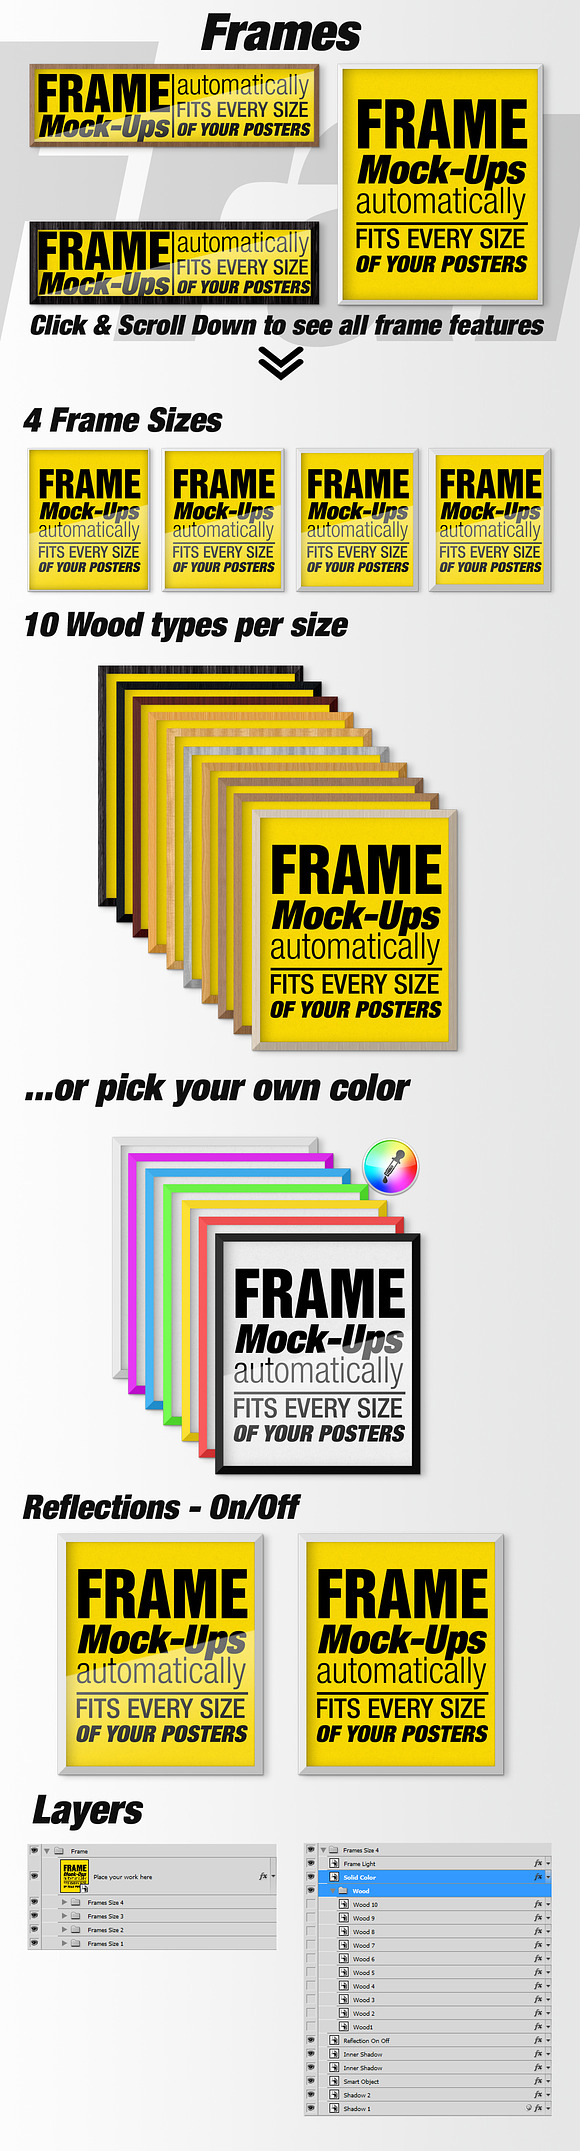 Canvas Mockups - Frames Mockups v 51 in Print Mockups - product preview 6